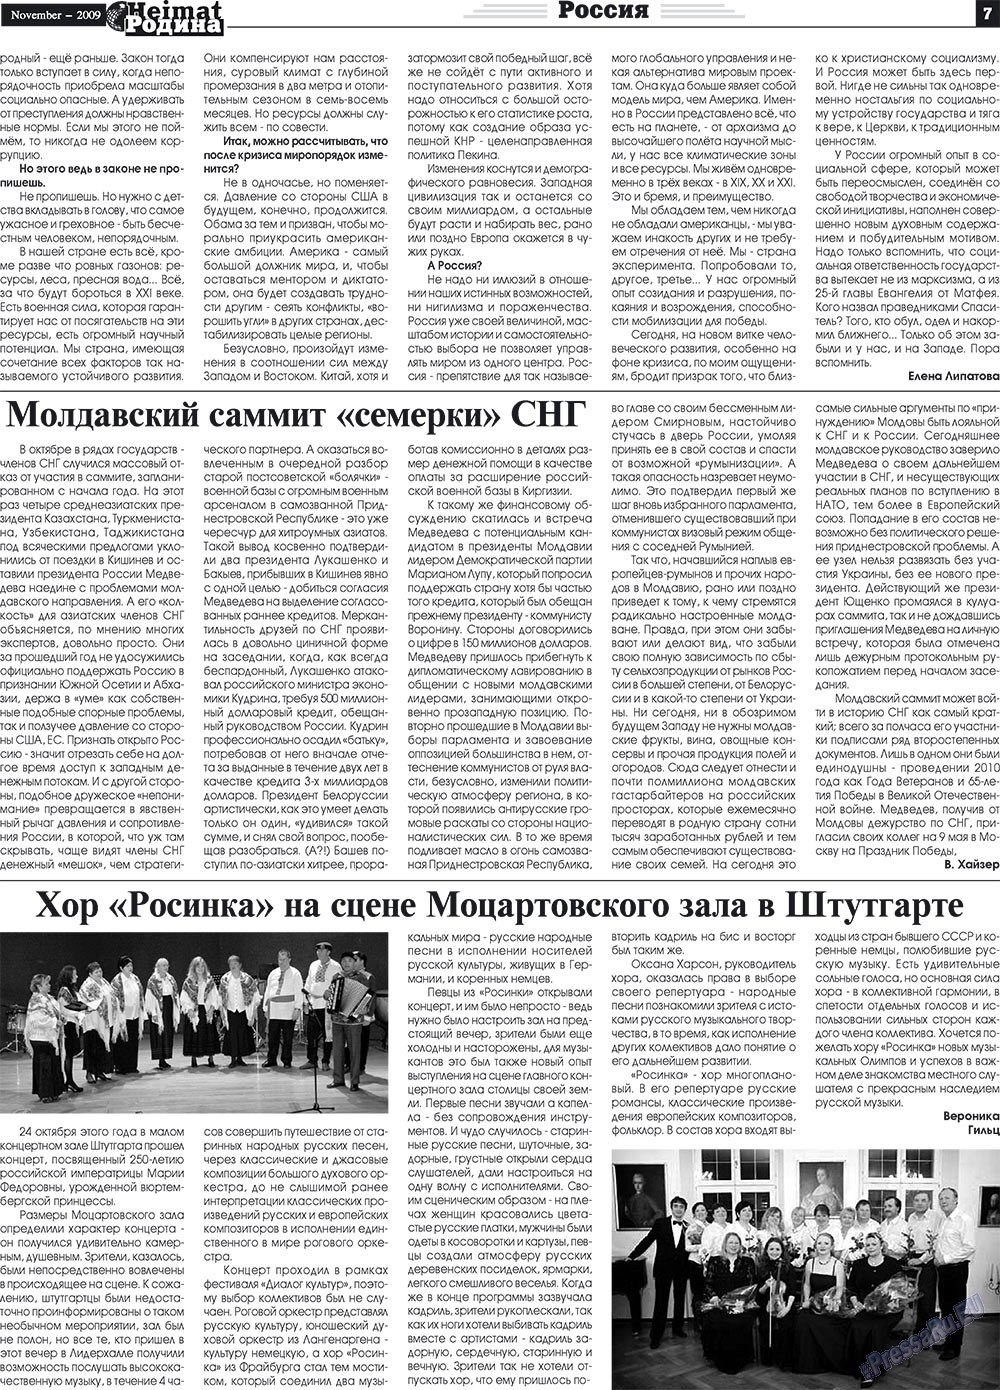 Heimat-Родина (газета). 2009 год, номер 11, стр. 7